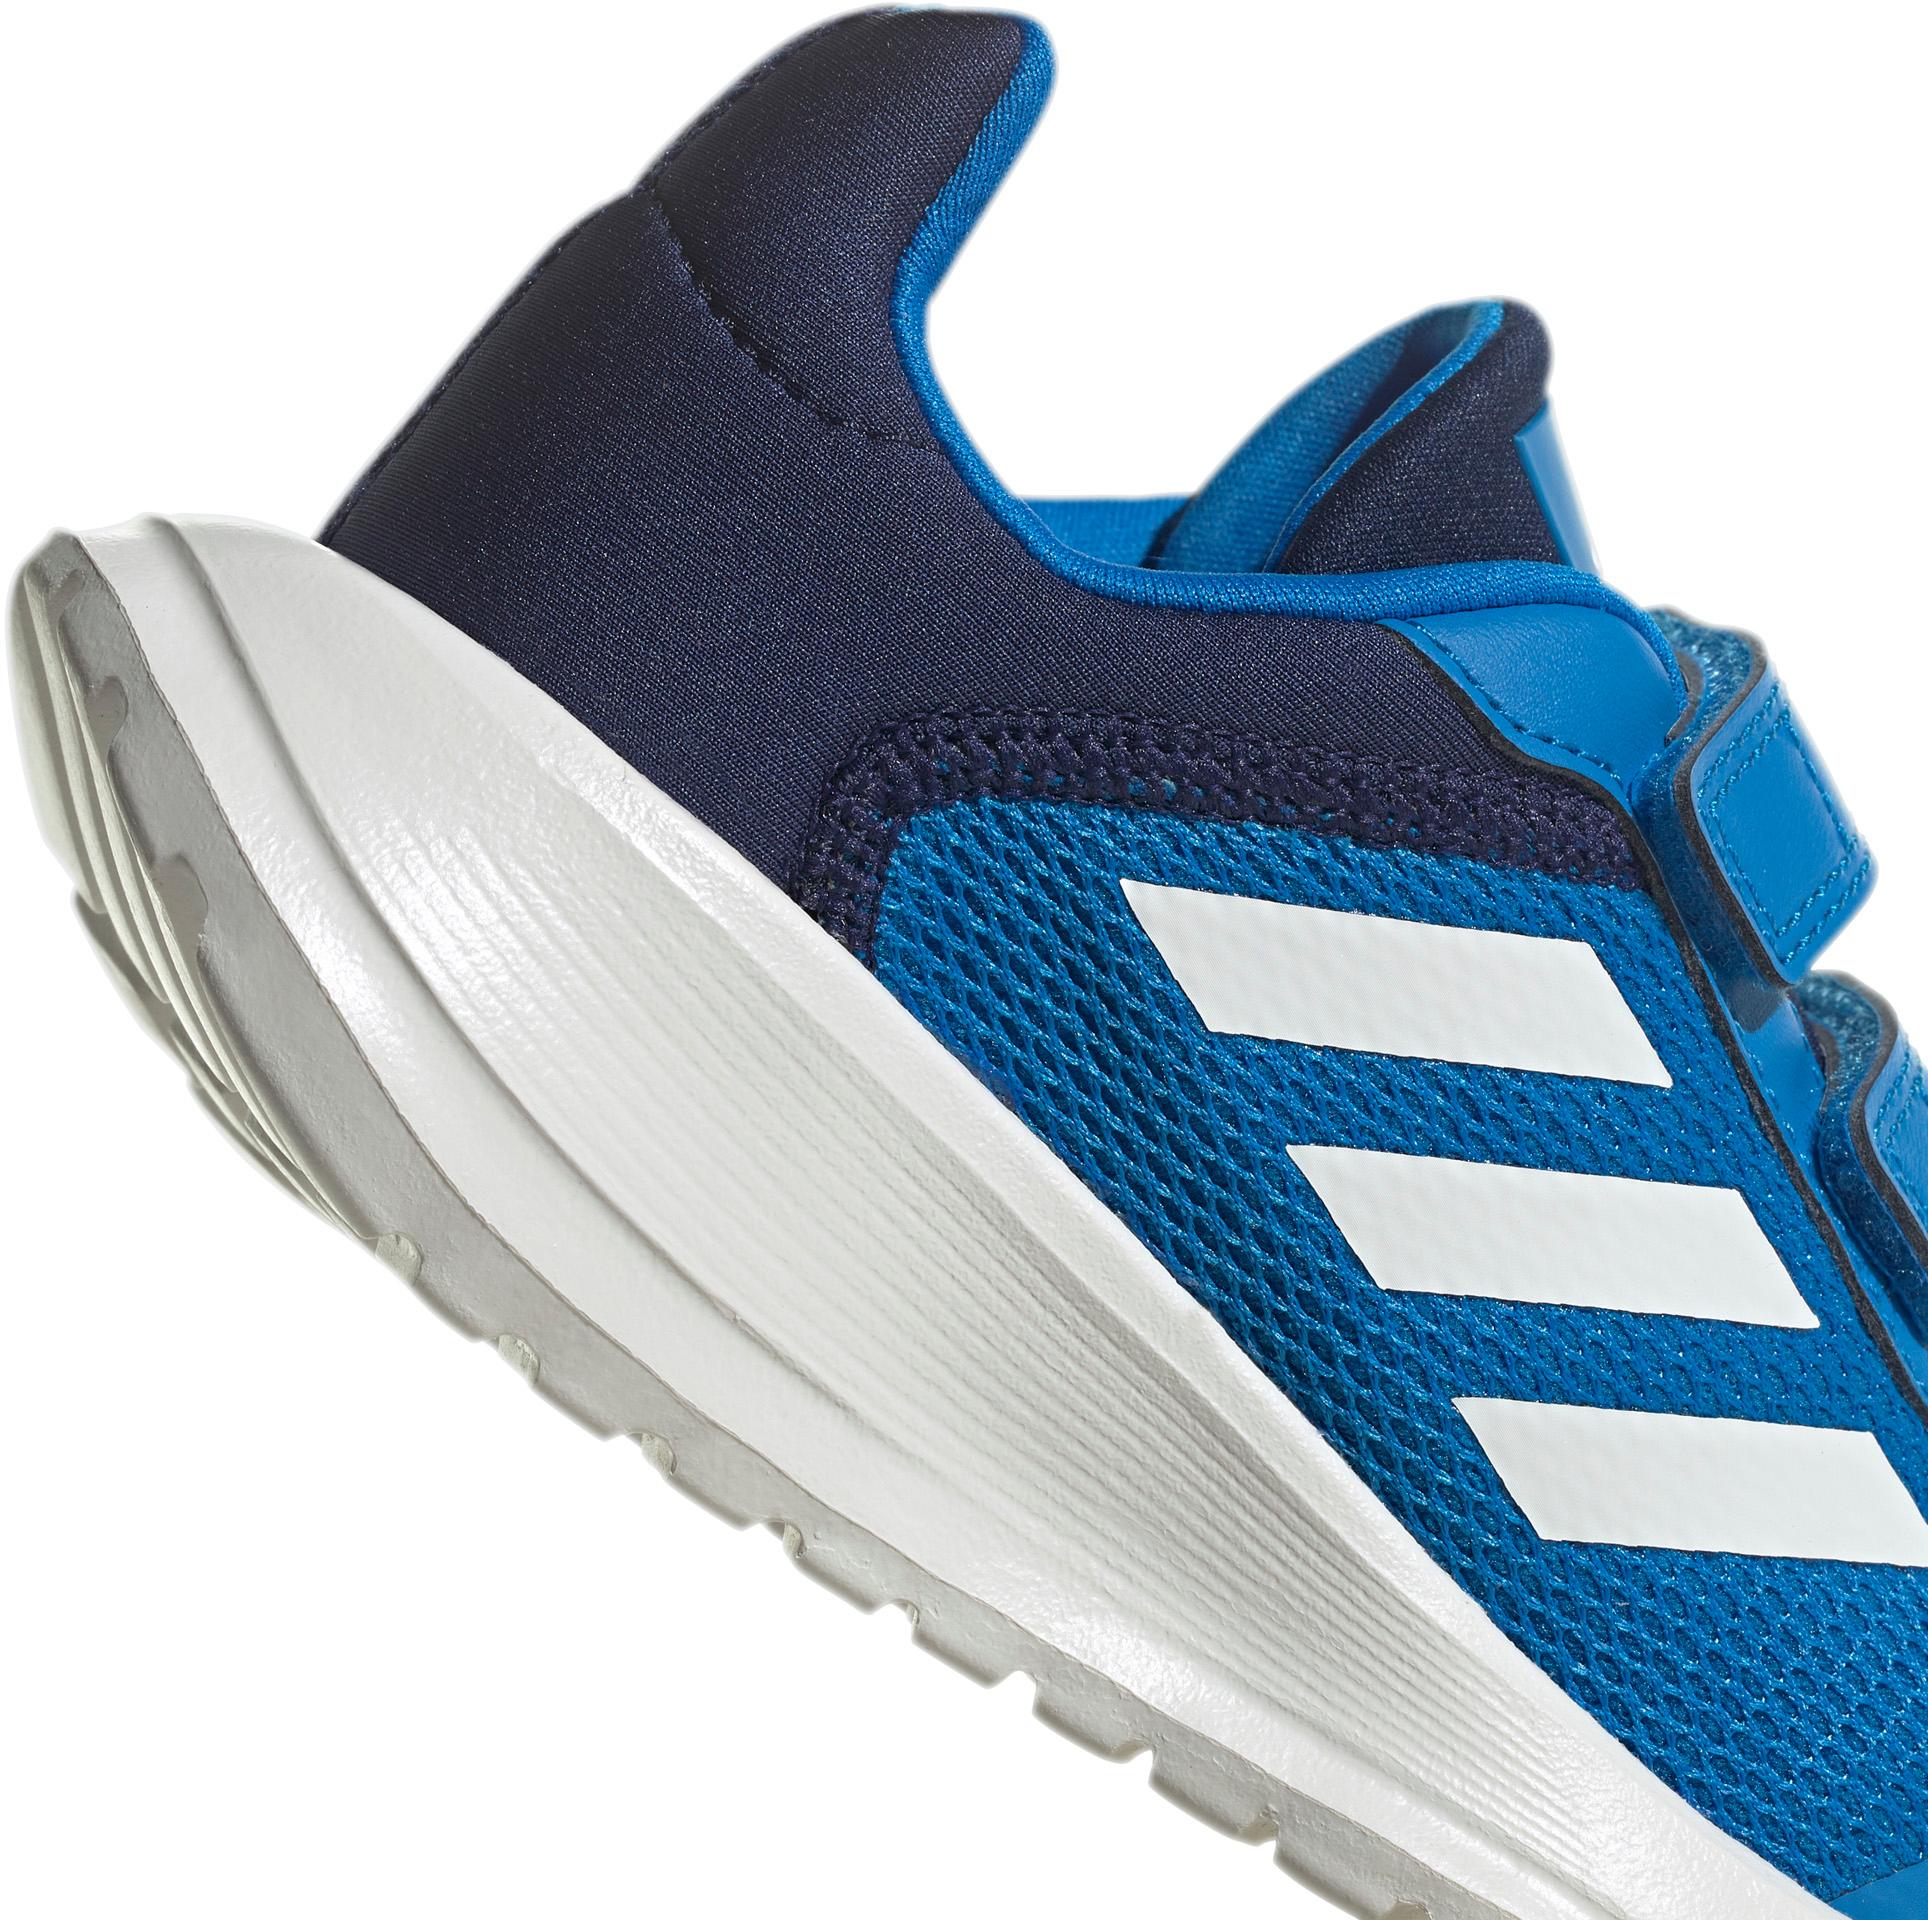 Kinder RUN von im blue rush-core TENSAUR Online SportScheck Shop Freizeitschuhe Adidas white-dark blue 2.0 kaufen